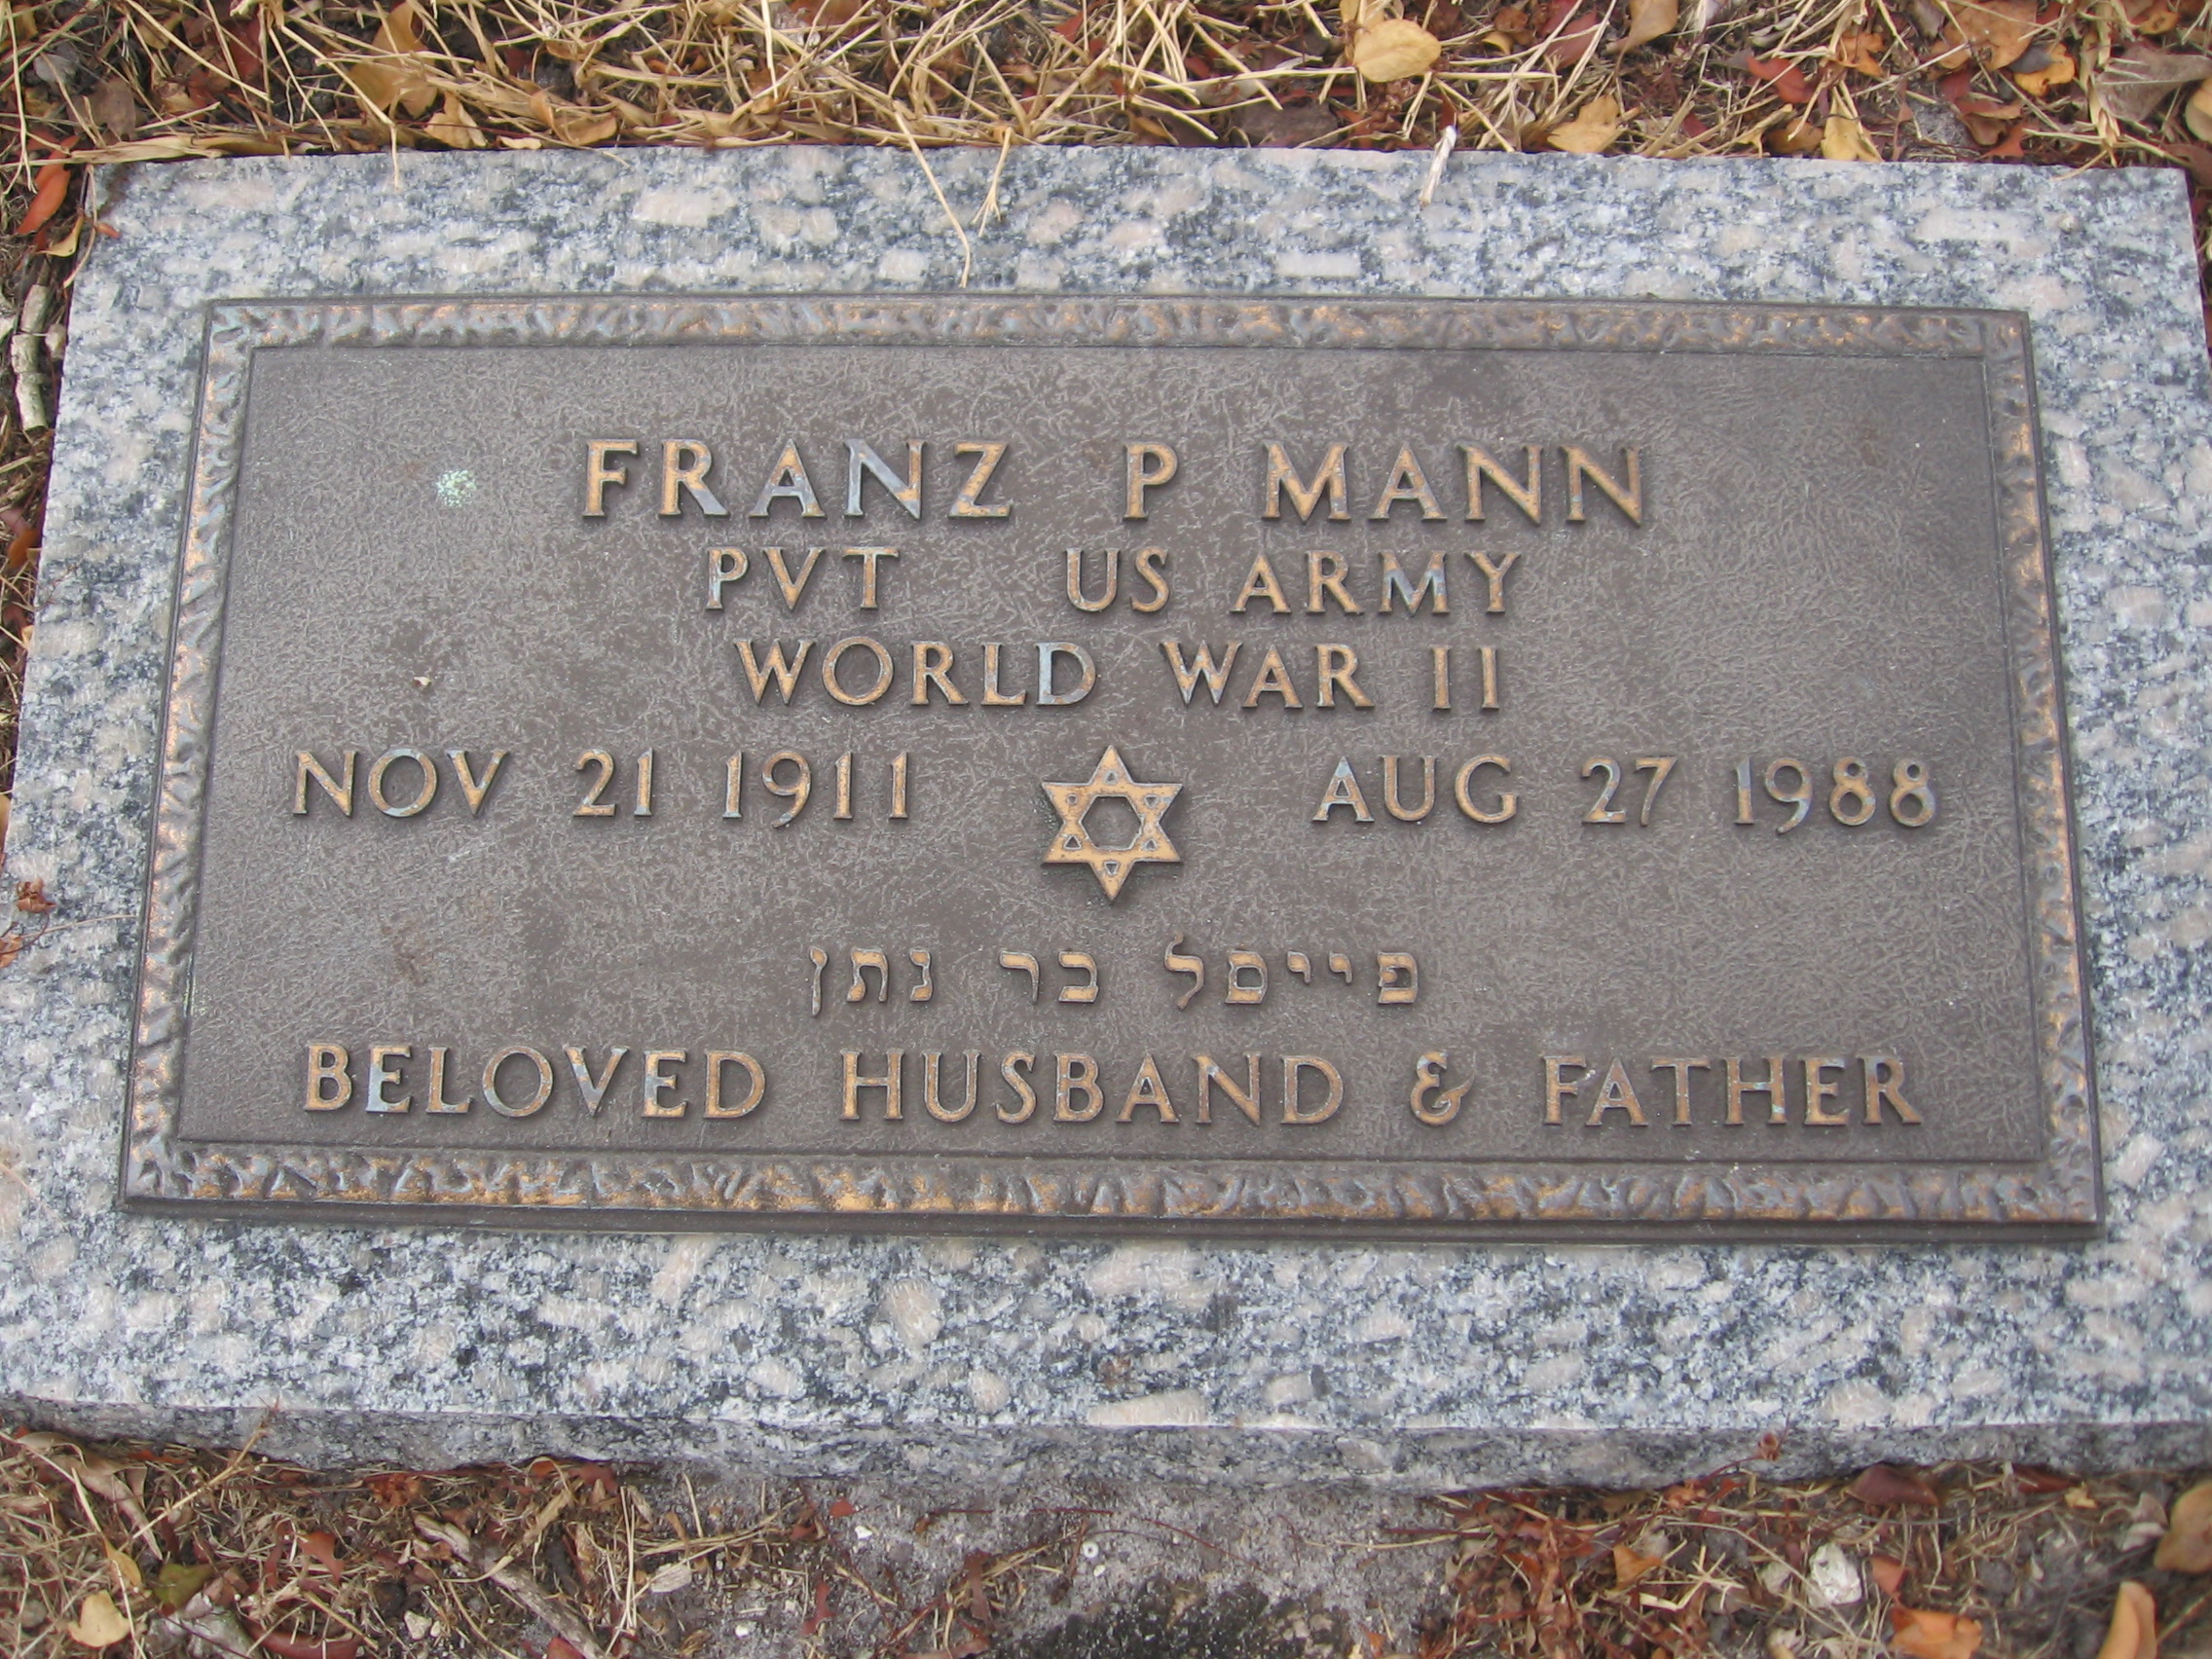 Pvt Franz P Mann